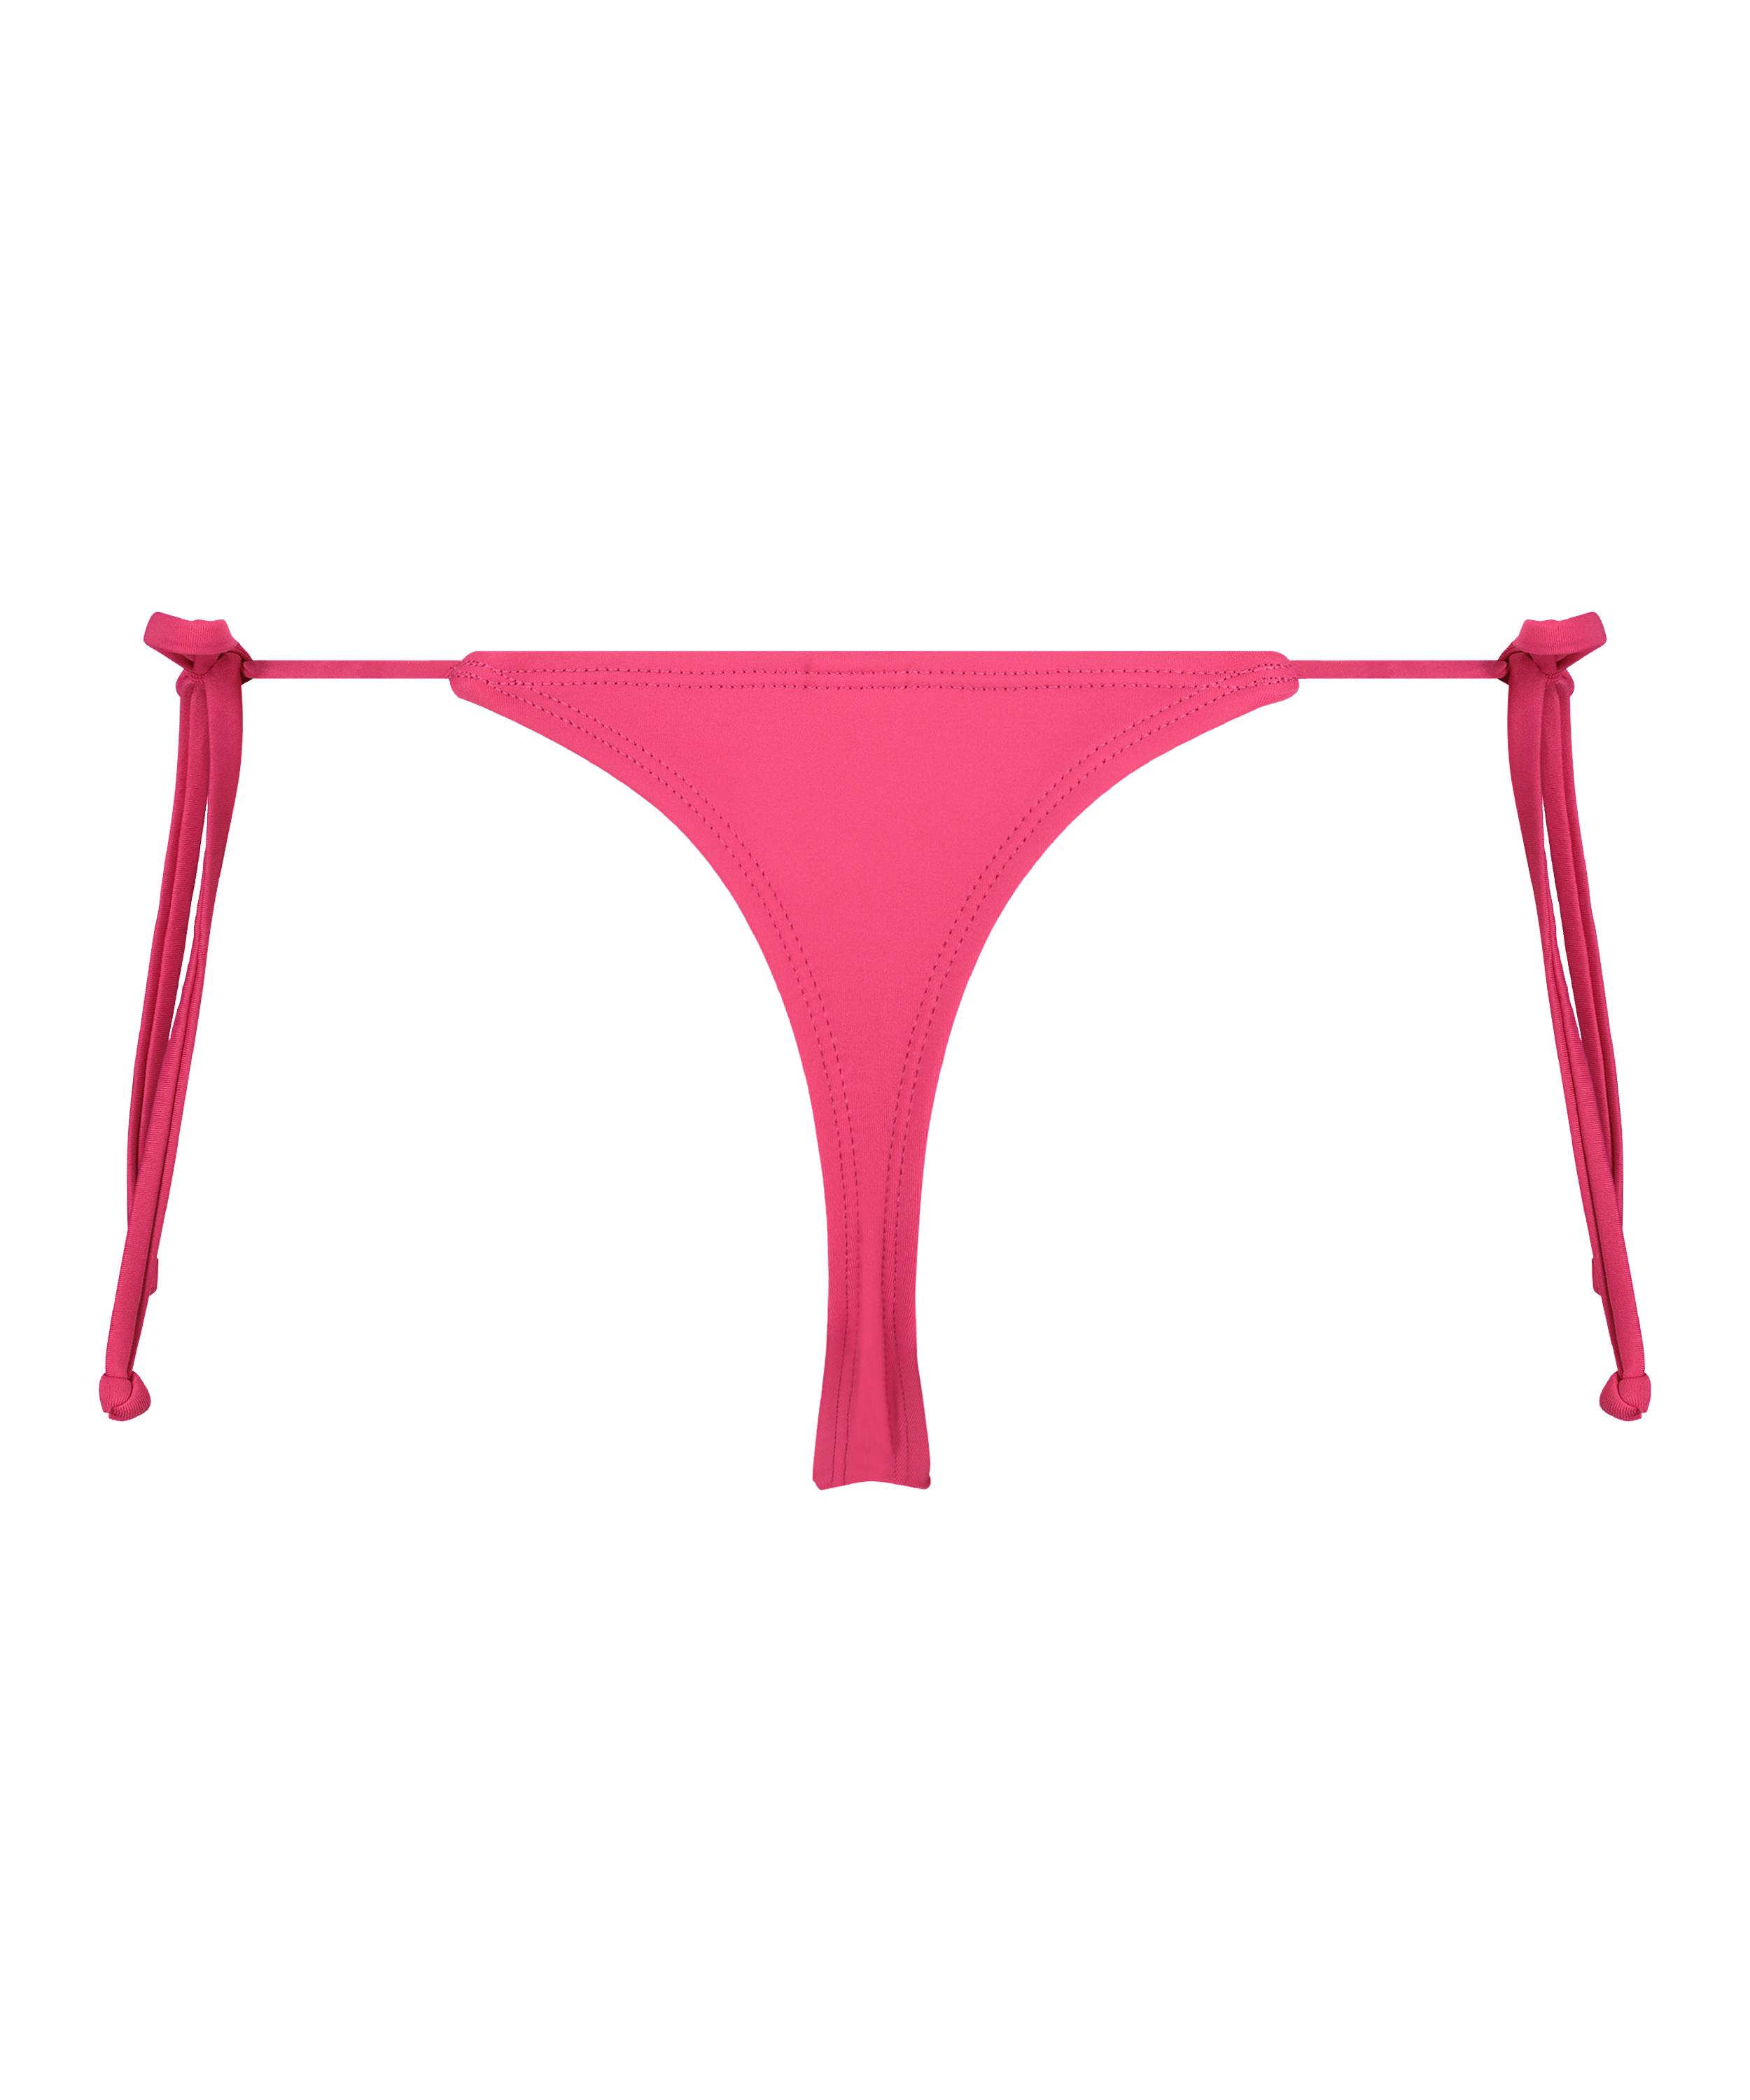 G-streng-bikinitrusse Luxe, pink, main